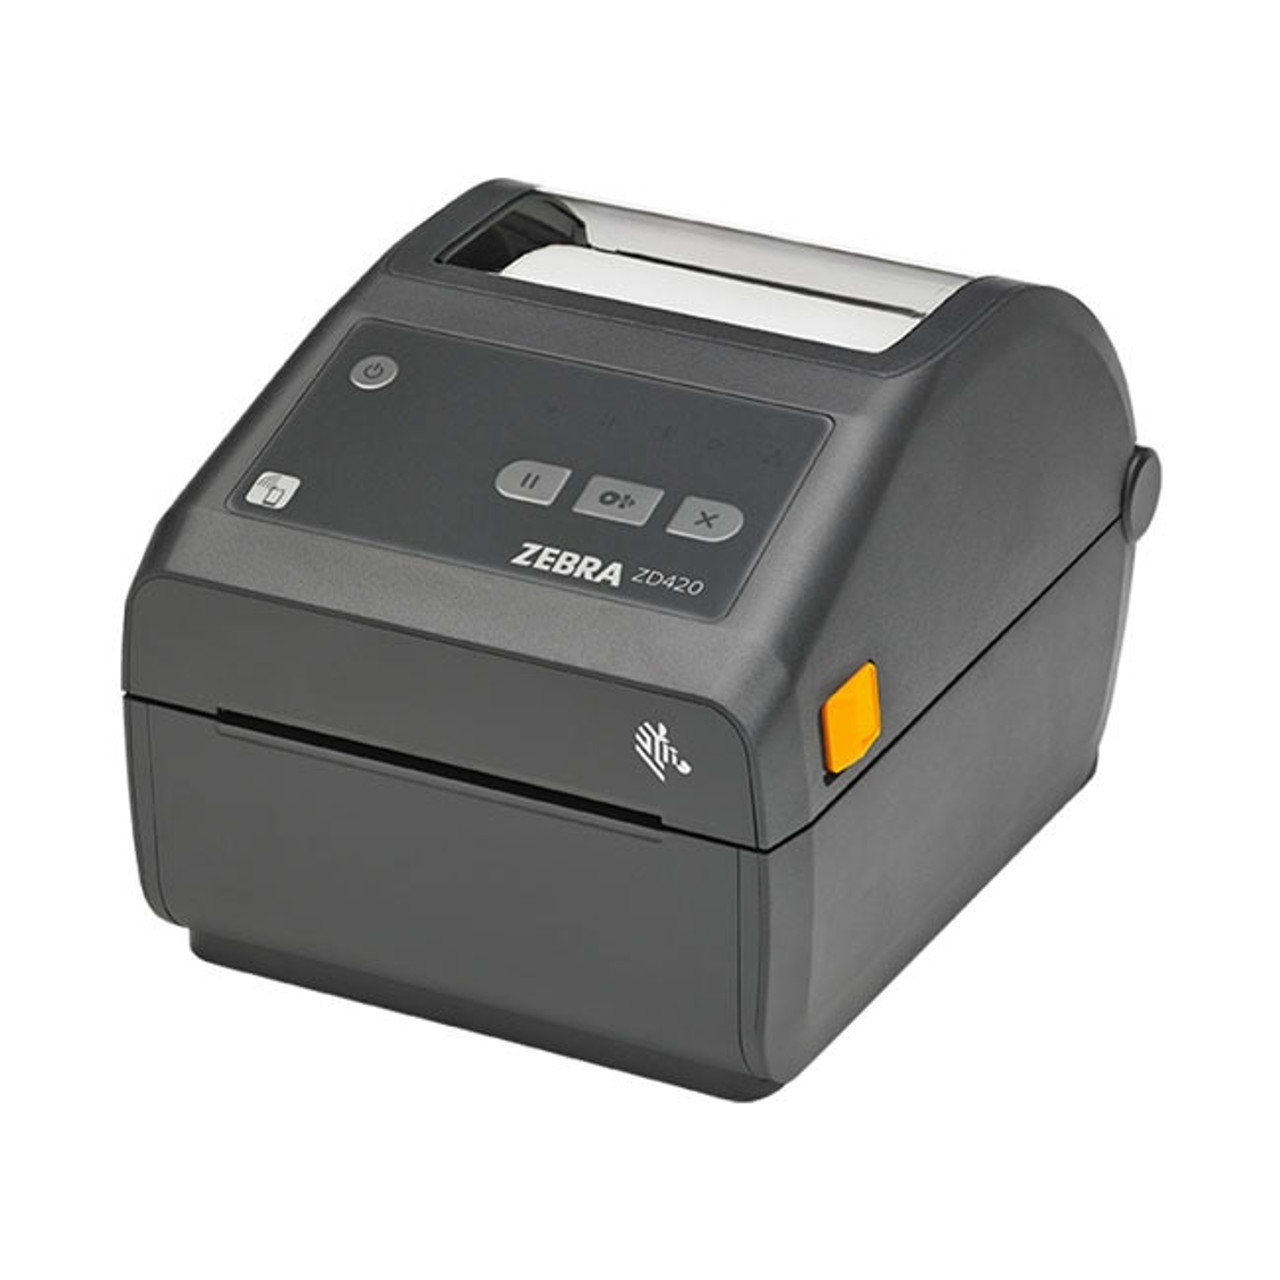 Zebra Zd420 Direct Thermal Desktop Printer Label Printers Australia 5861